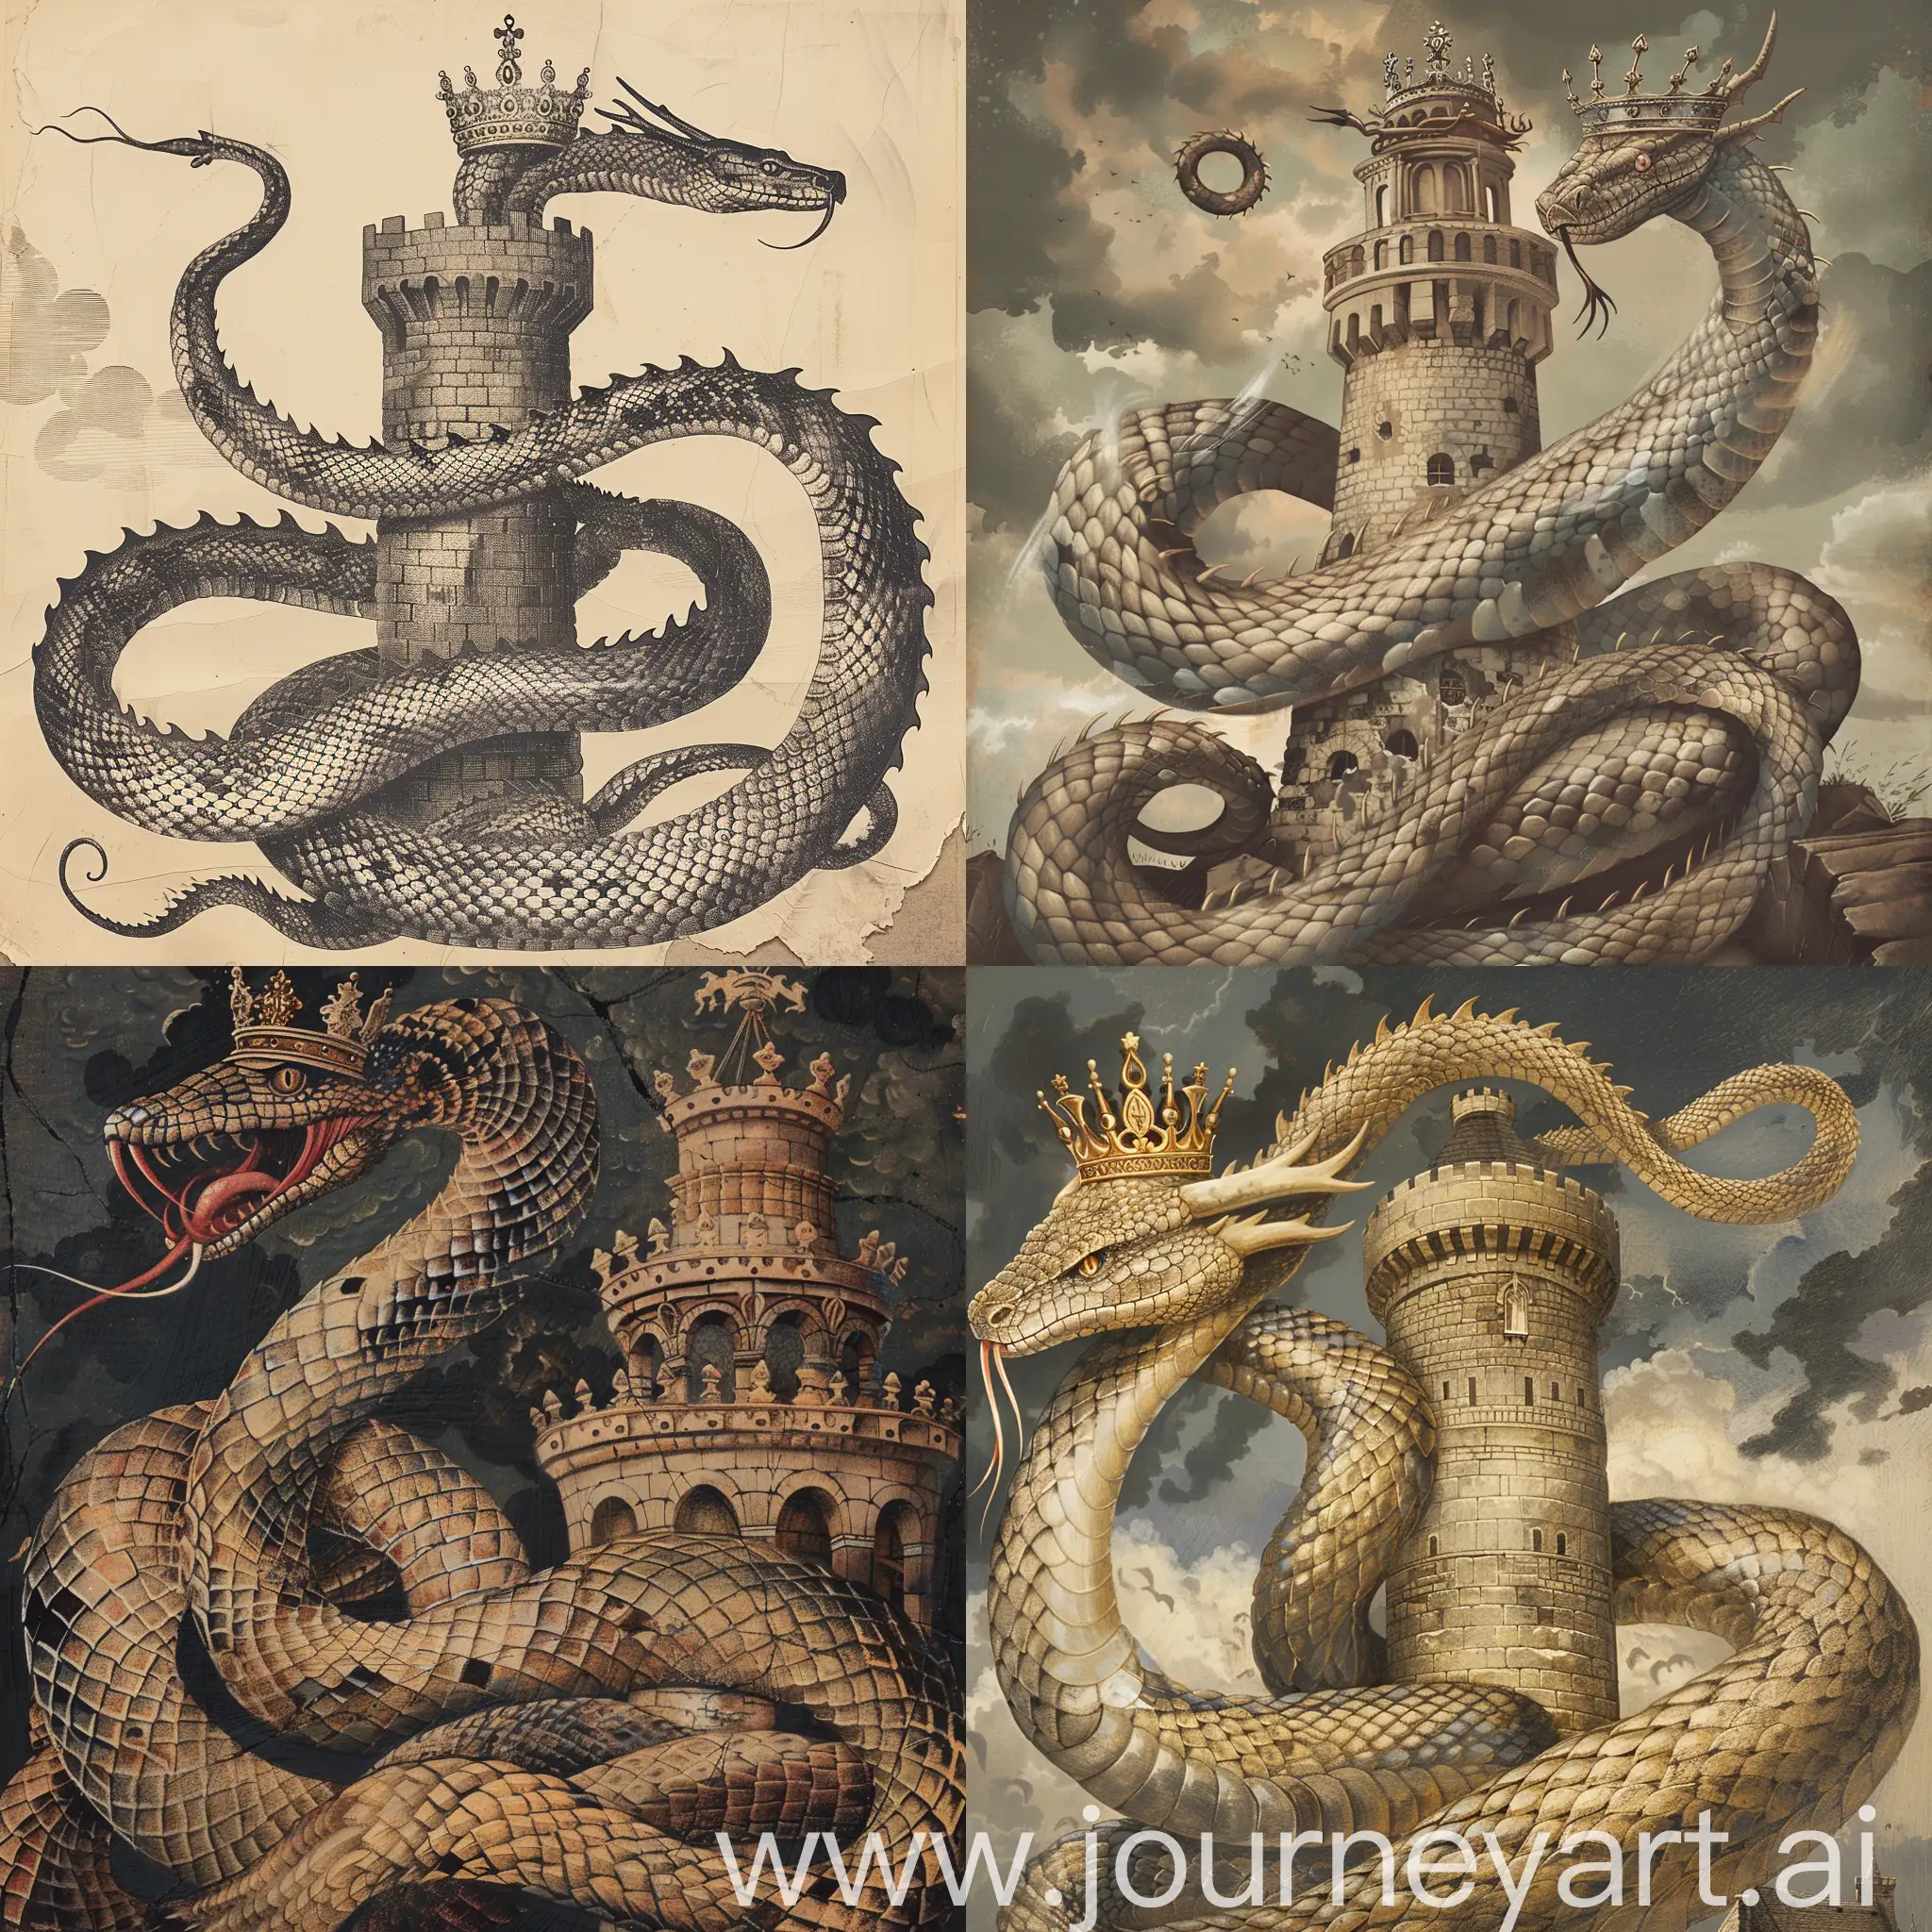 змей-дракон с короной на голове обвивает башню